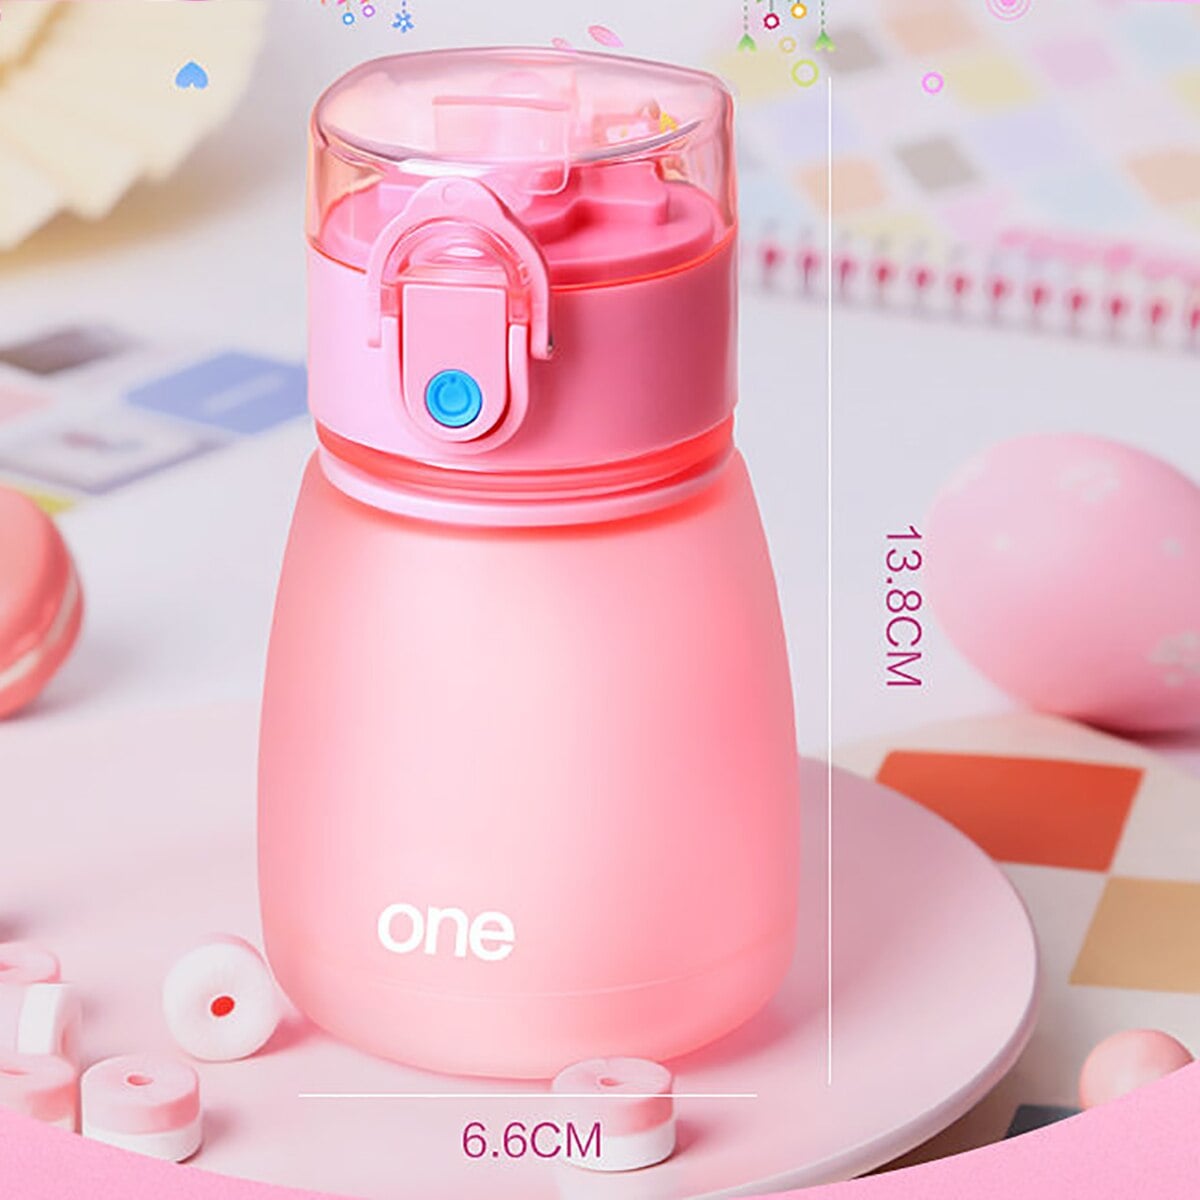 kinder klassisch rosa grosse Feldflasche